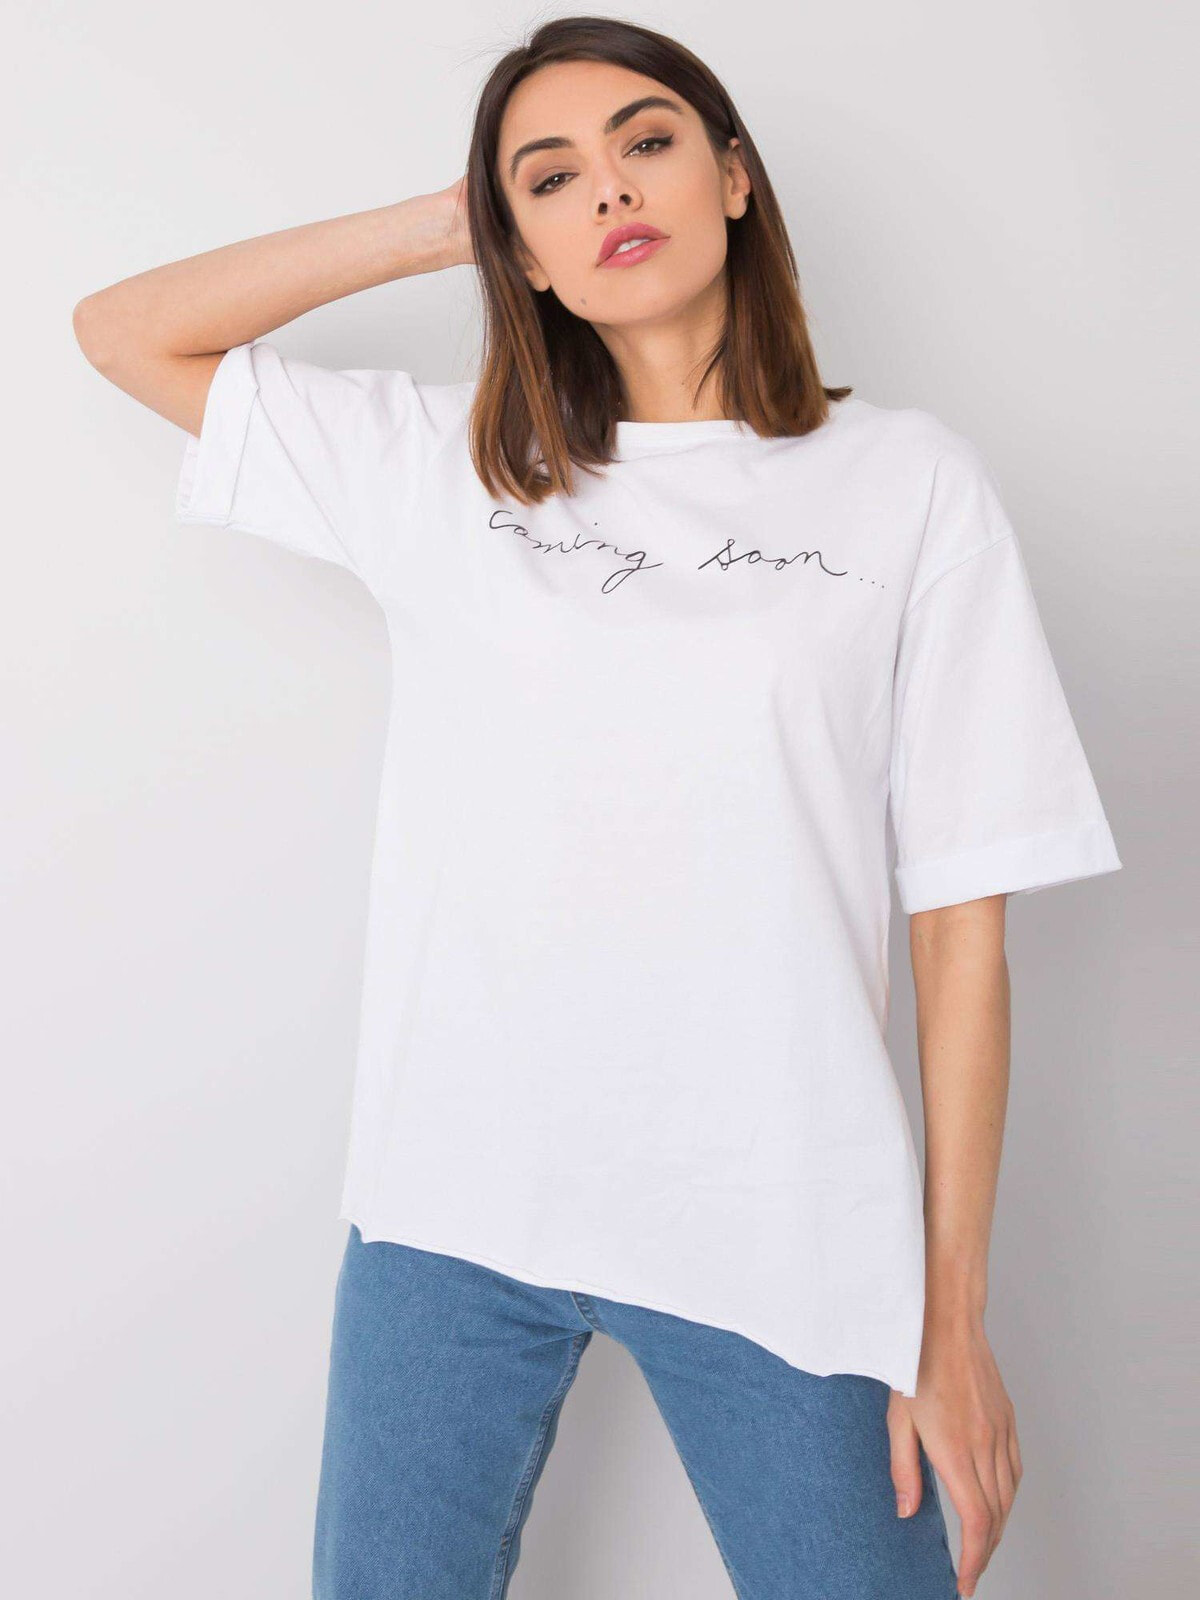 Женская футболка свободного кроя белая Factory Price